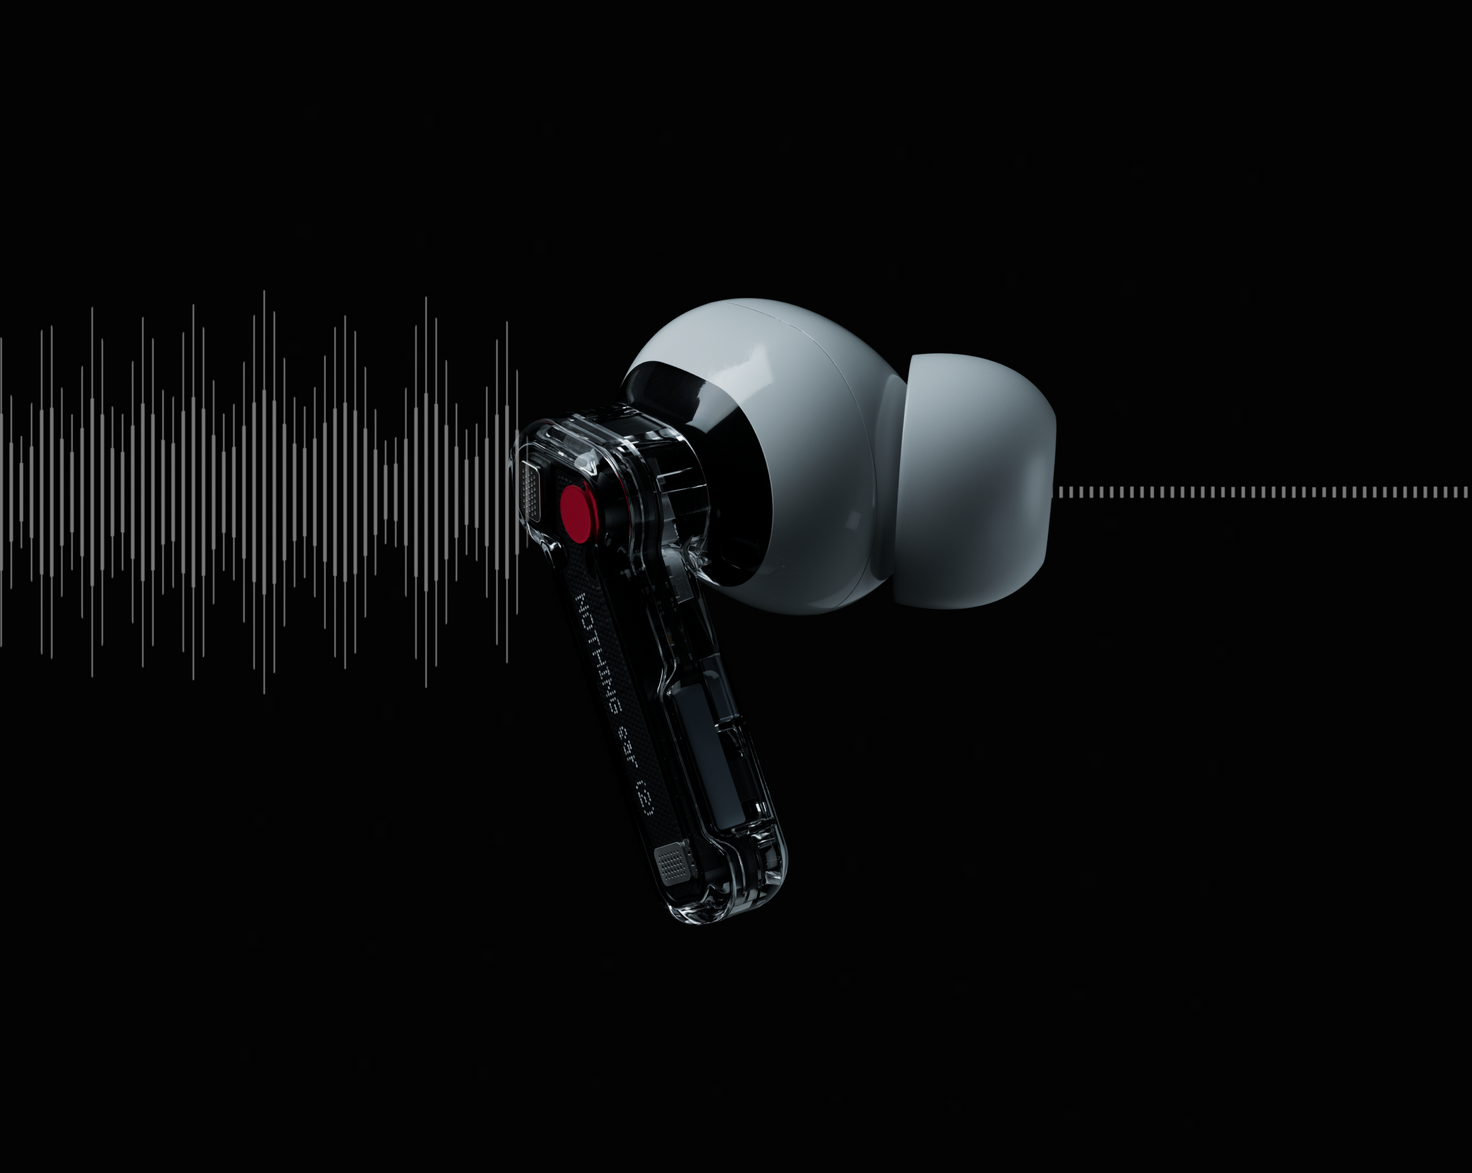  Nothing Ear 2 Auriculares inalámbricos de alta resolución,  auriculares con cancelación de ruido 2023 con diseño de doble cámara,  auriculares Bluetooth para iPhone, Android, 0.16 oz ultra ligeros, 36 horas  de